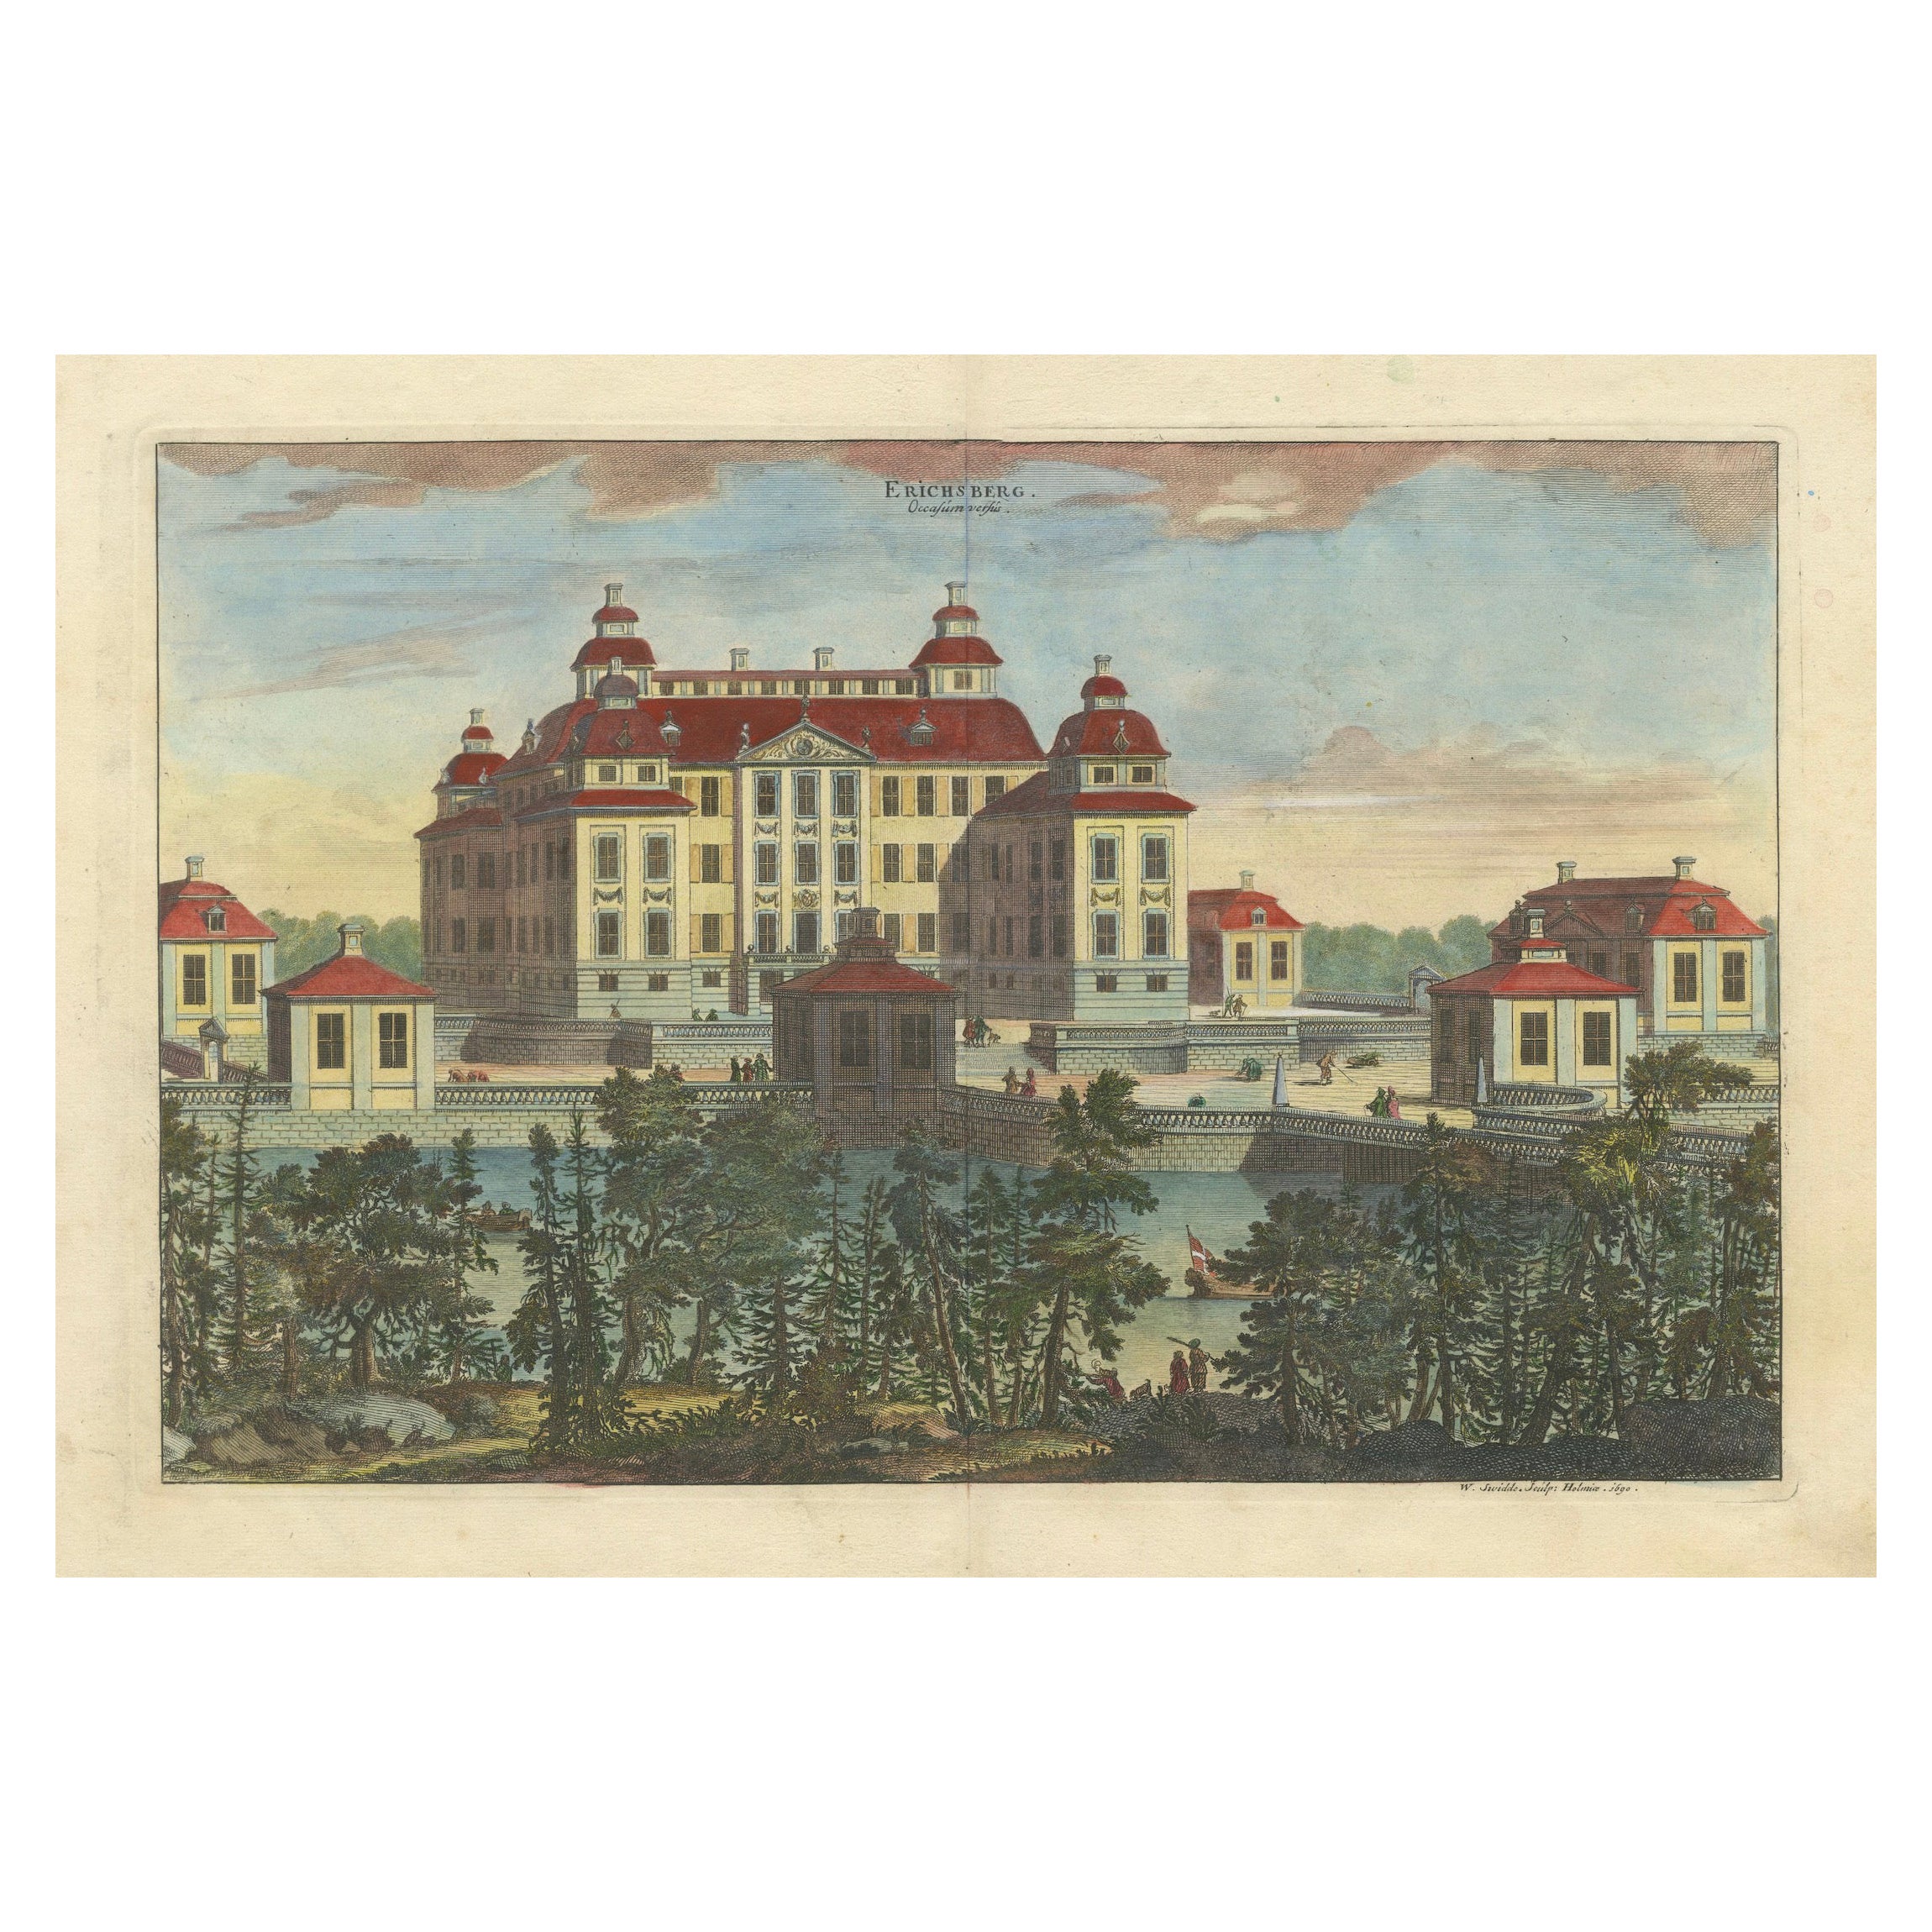 Baroque Splendor: Ericsberg Castle in Swidde's Suecia Antiqua et Hodierna, 1690